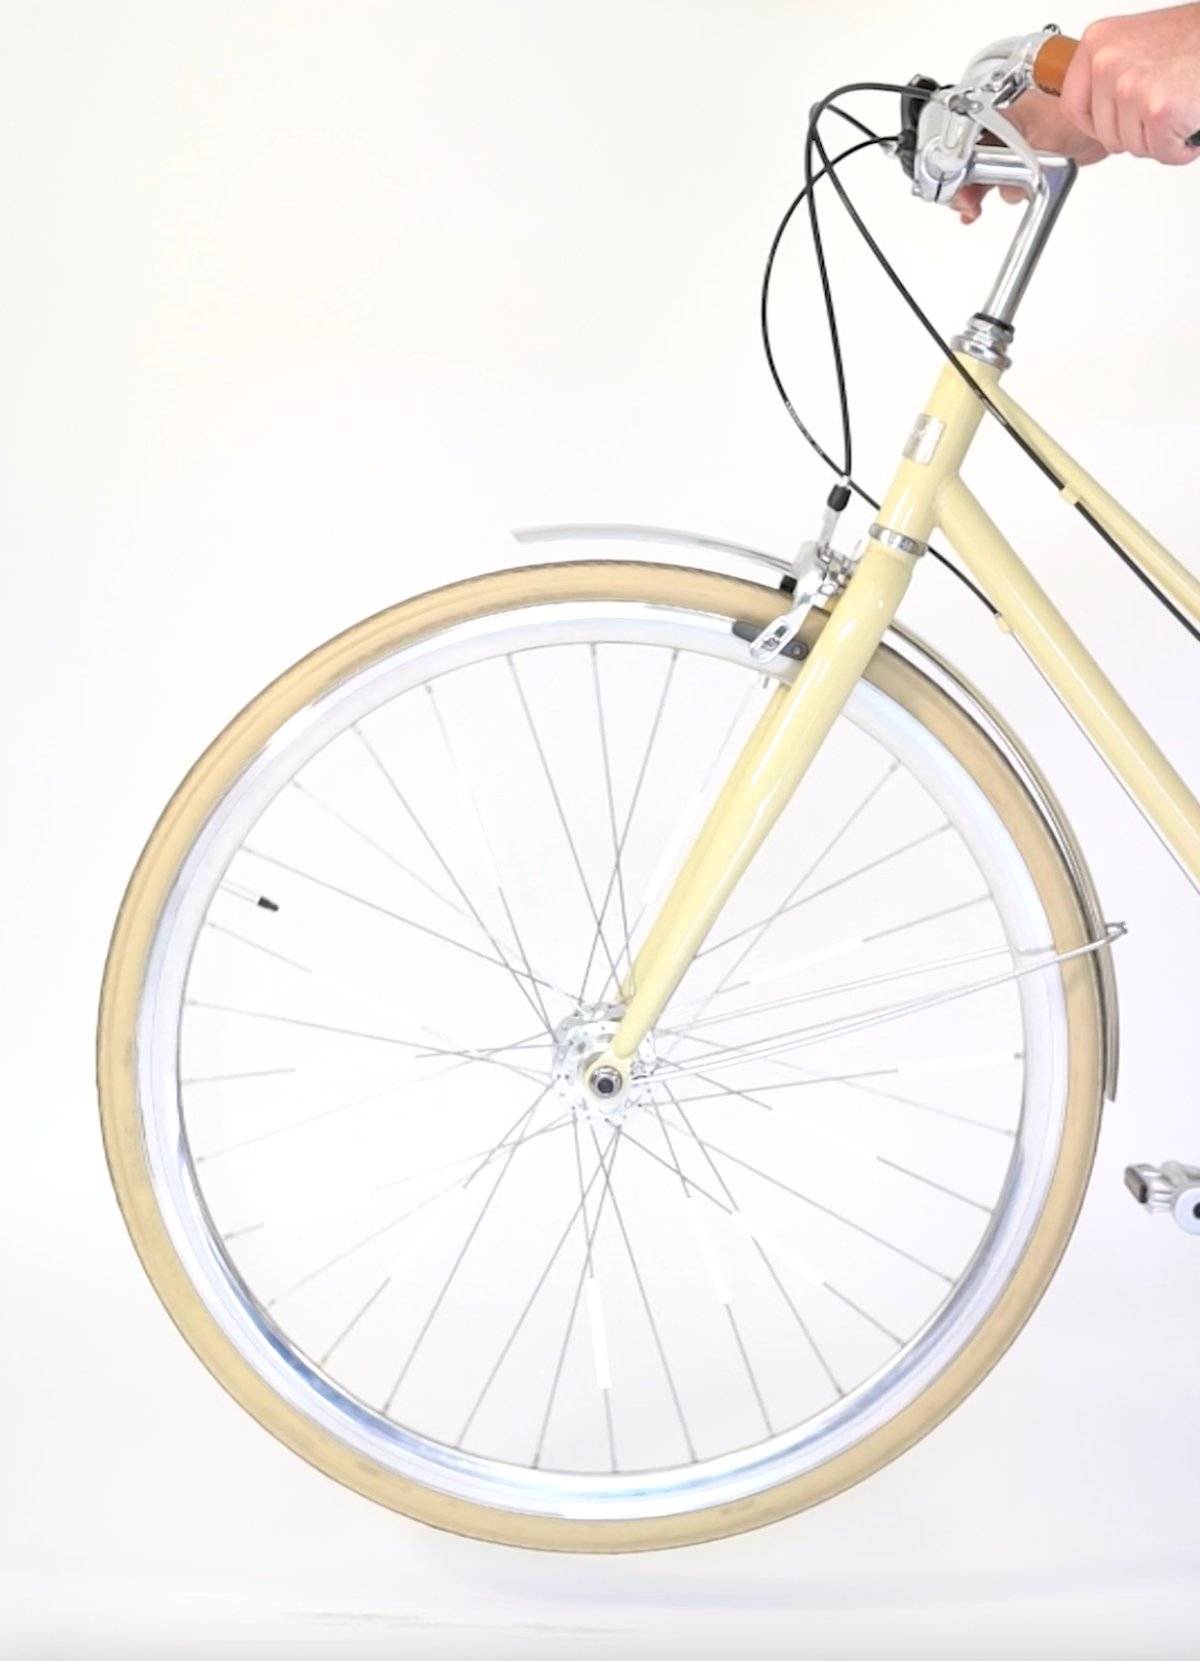 Réflecteurs pour Rayons de Vélo, roule en Sécurité / ROSE BUNKER